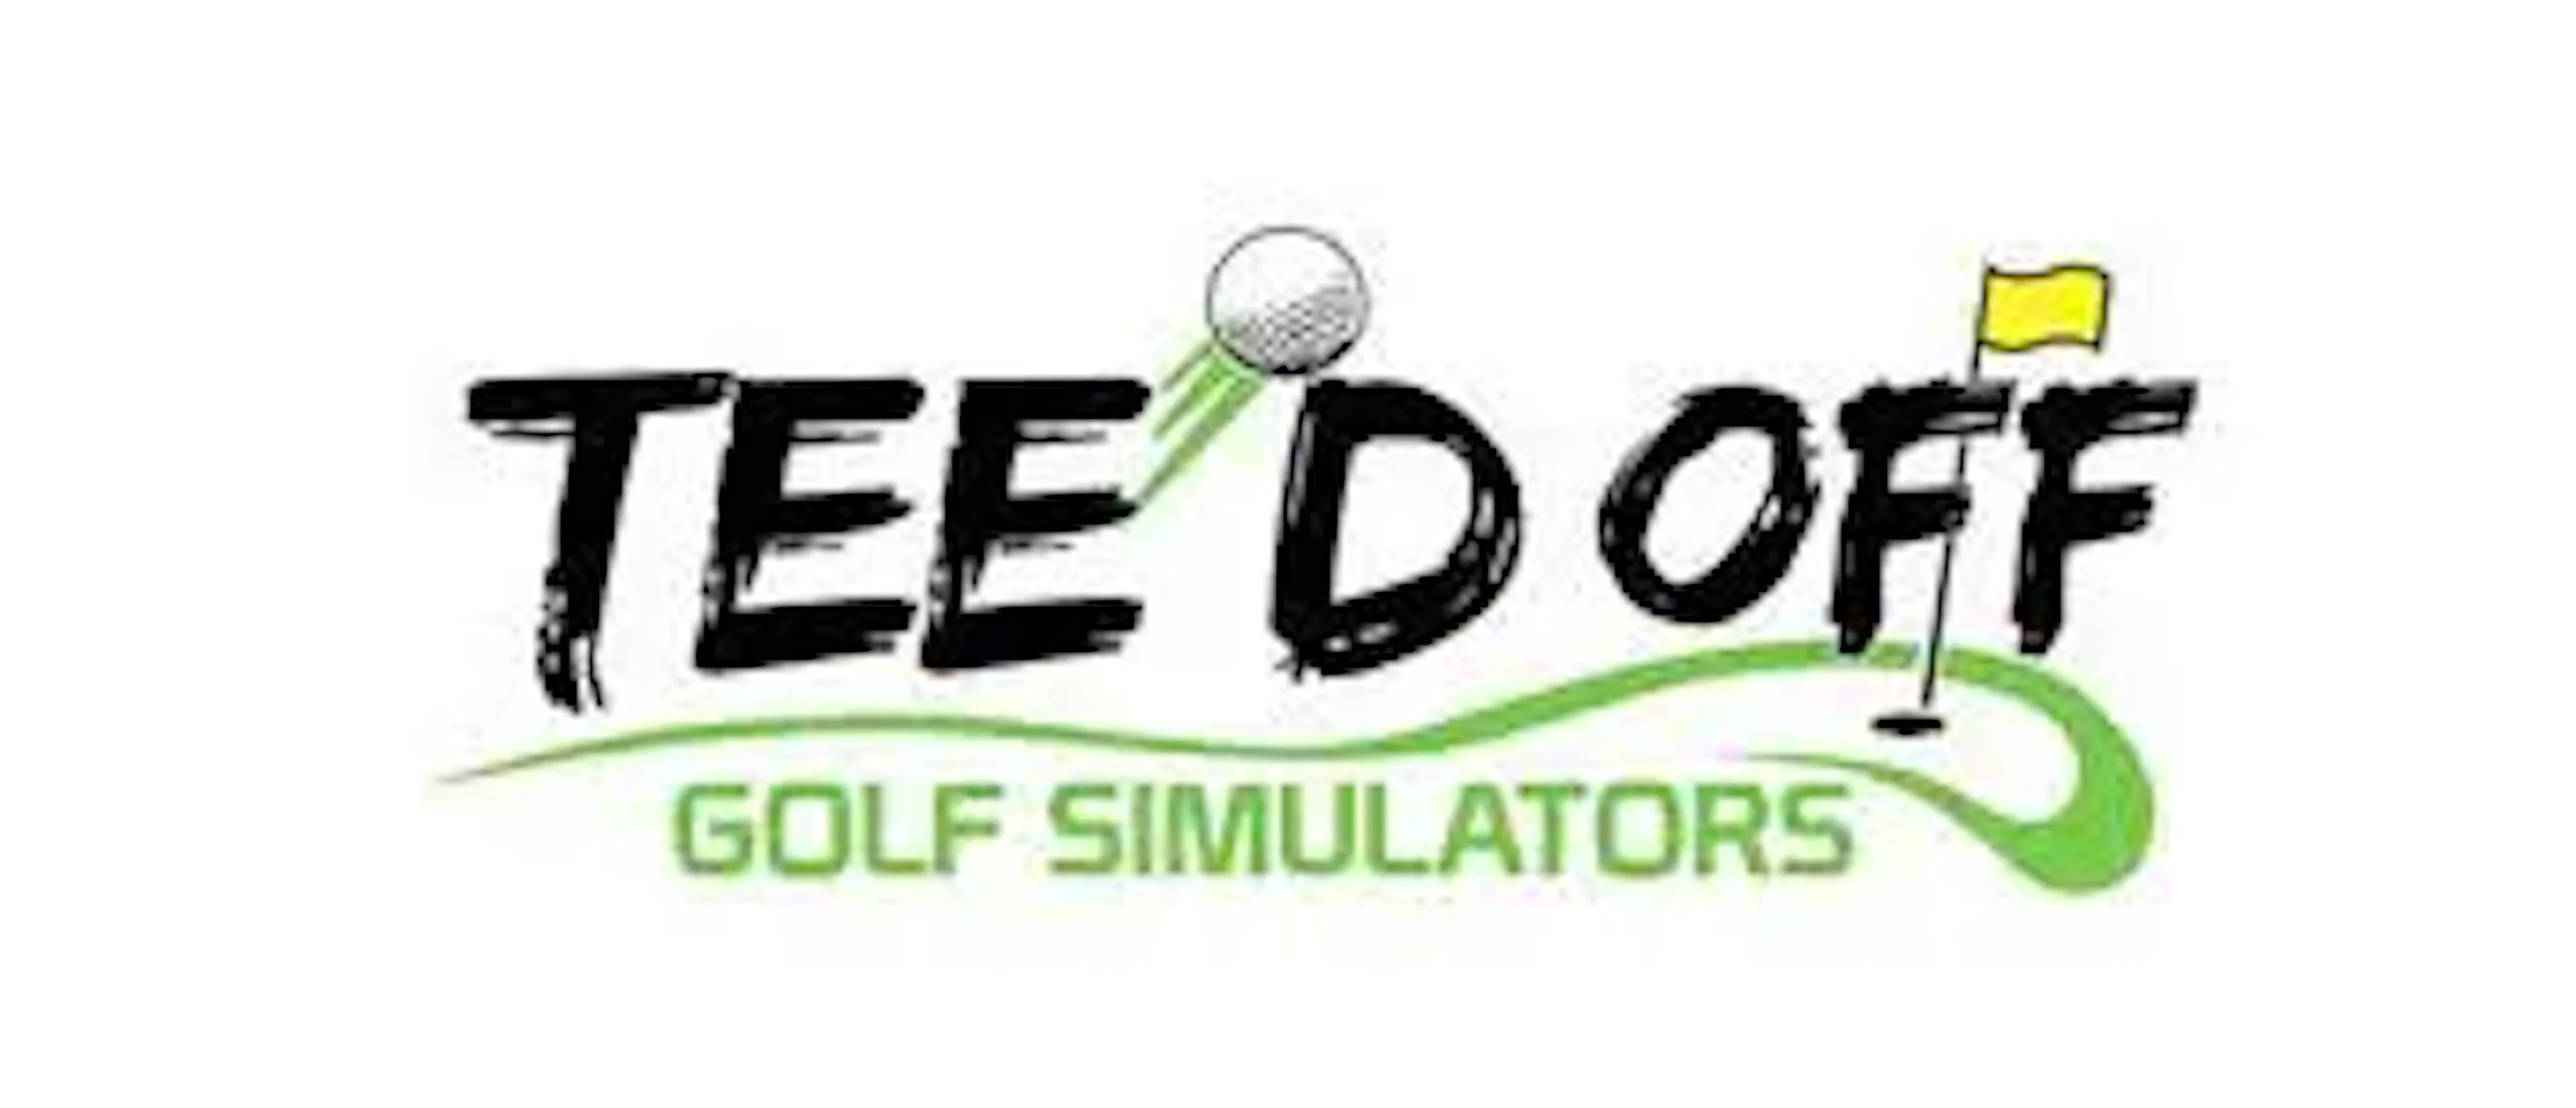 tee'd off golf simulators